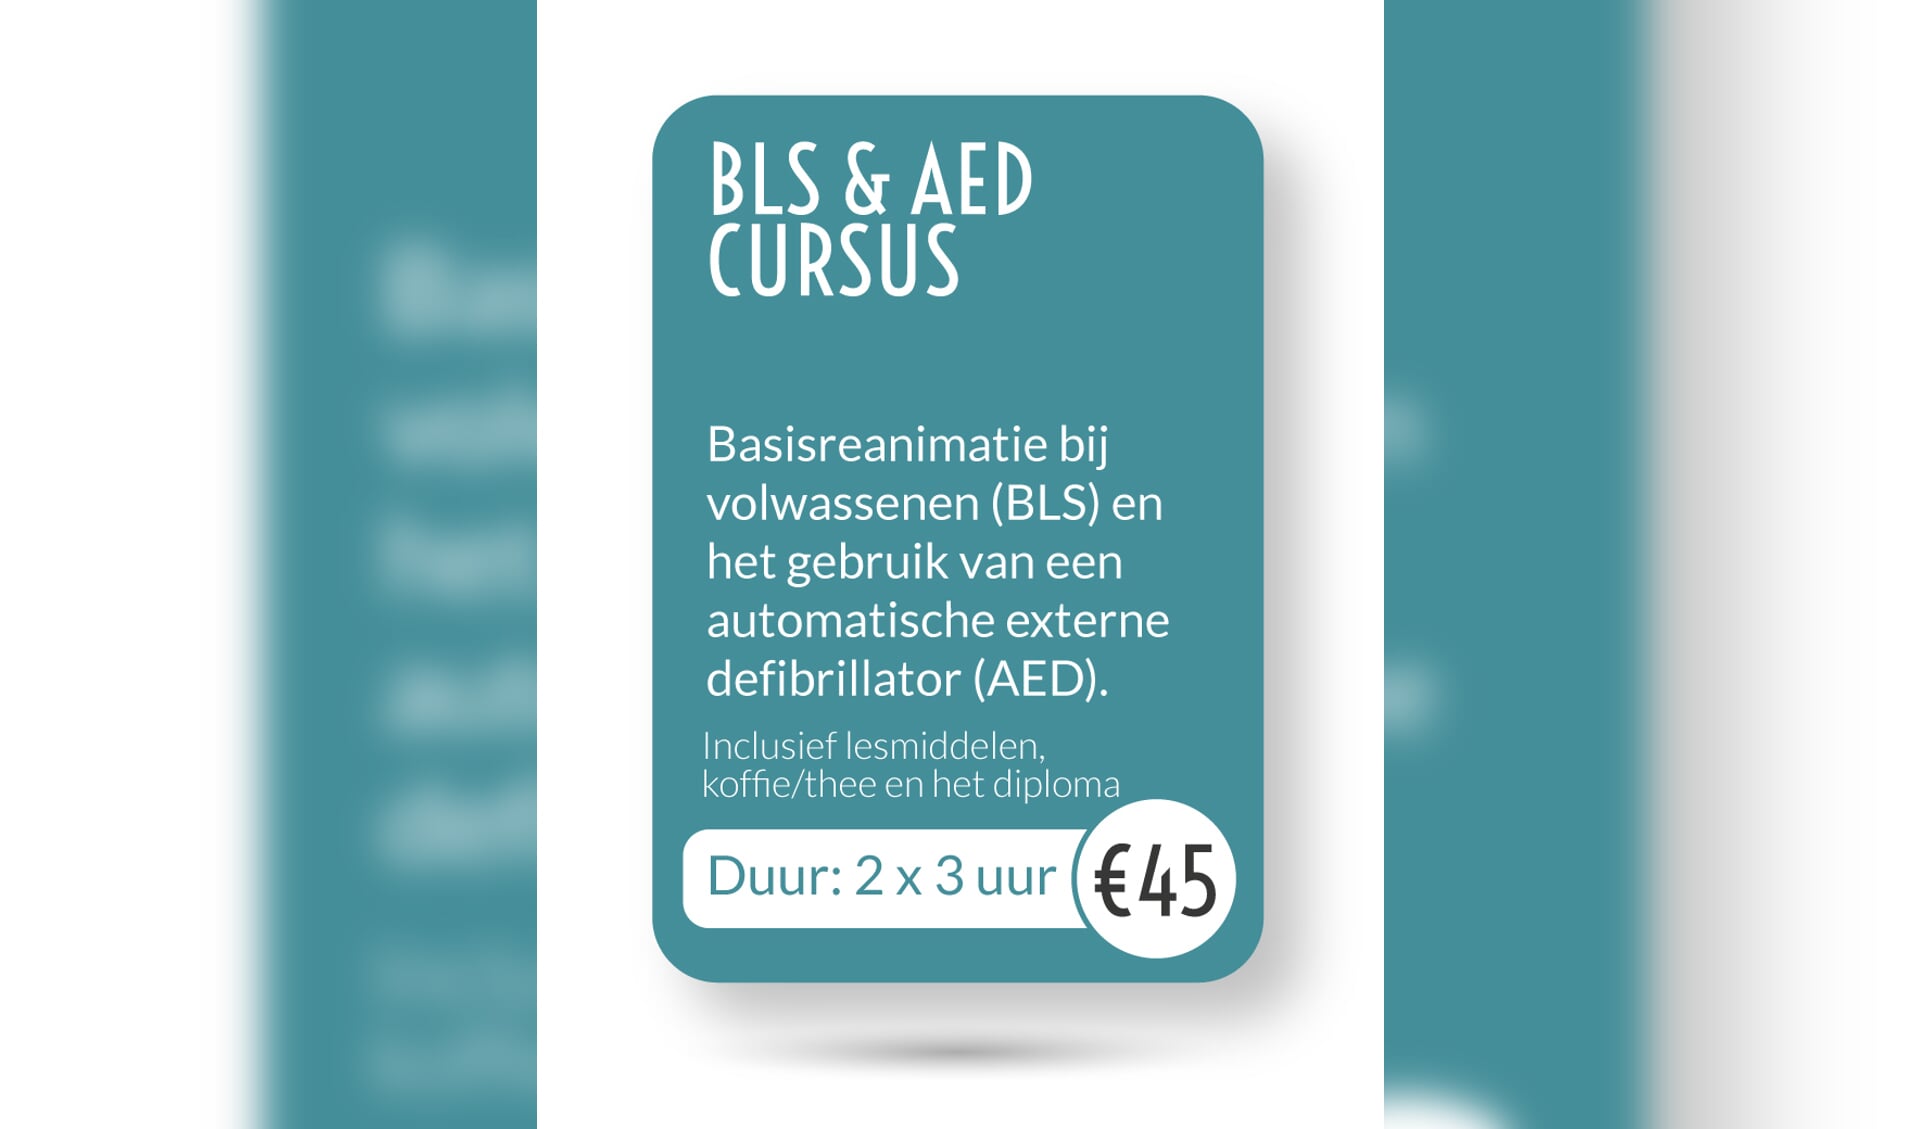 BLS & AED cursus